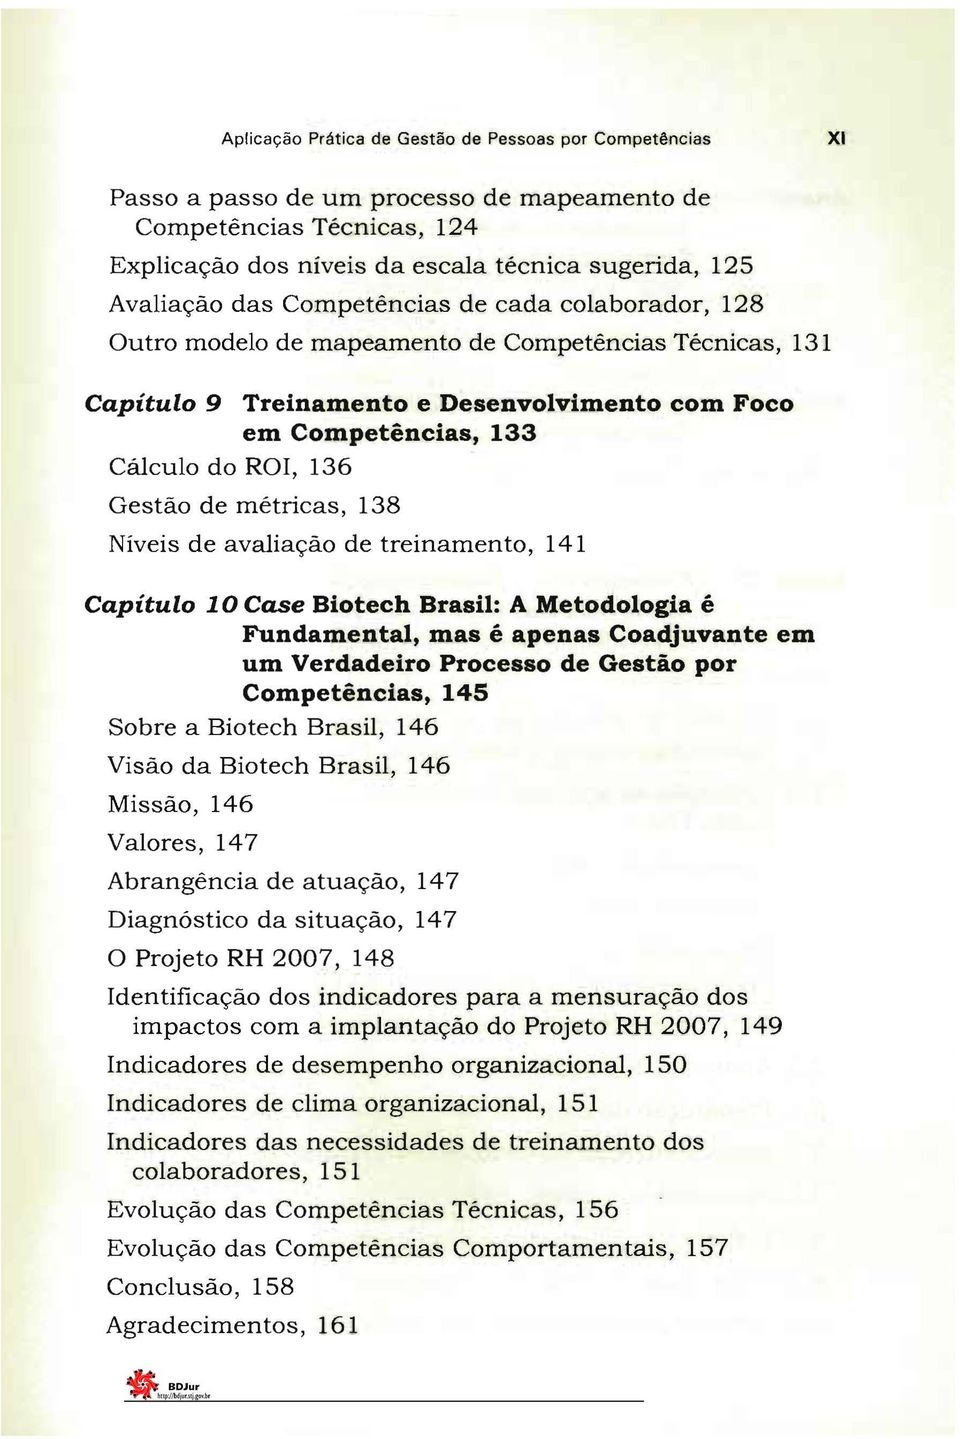 métricas, 138 Níveis de avaliação de treinamento, 141 Capítulo 10 Case Biotech Brasil: A Metodologia é Fundamental, mas é apenas Coadjuvante em um Verdadeiro Processo de Gestão por Competências, 145